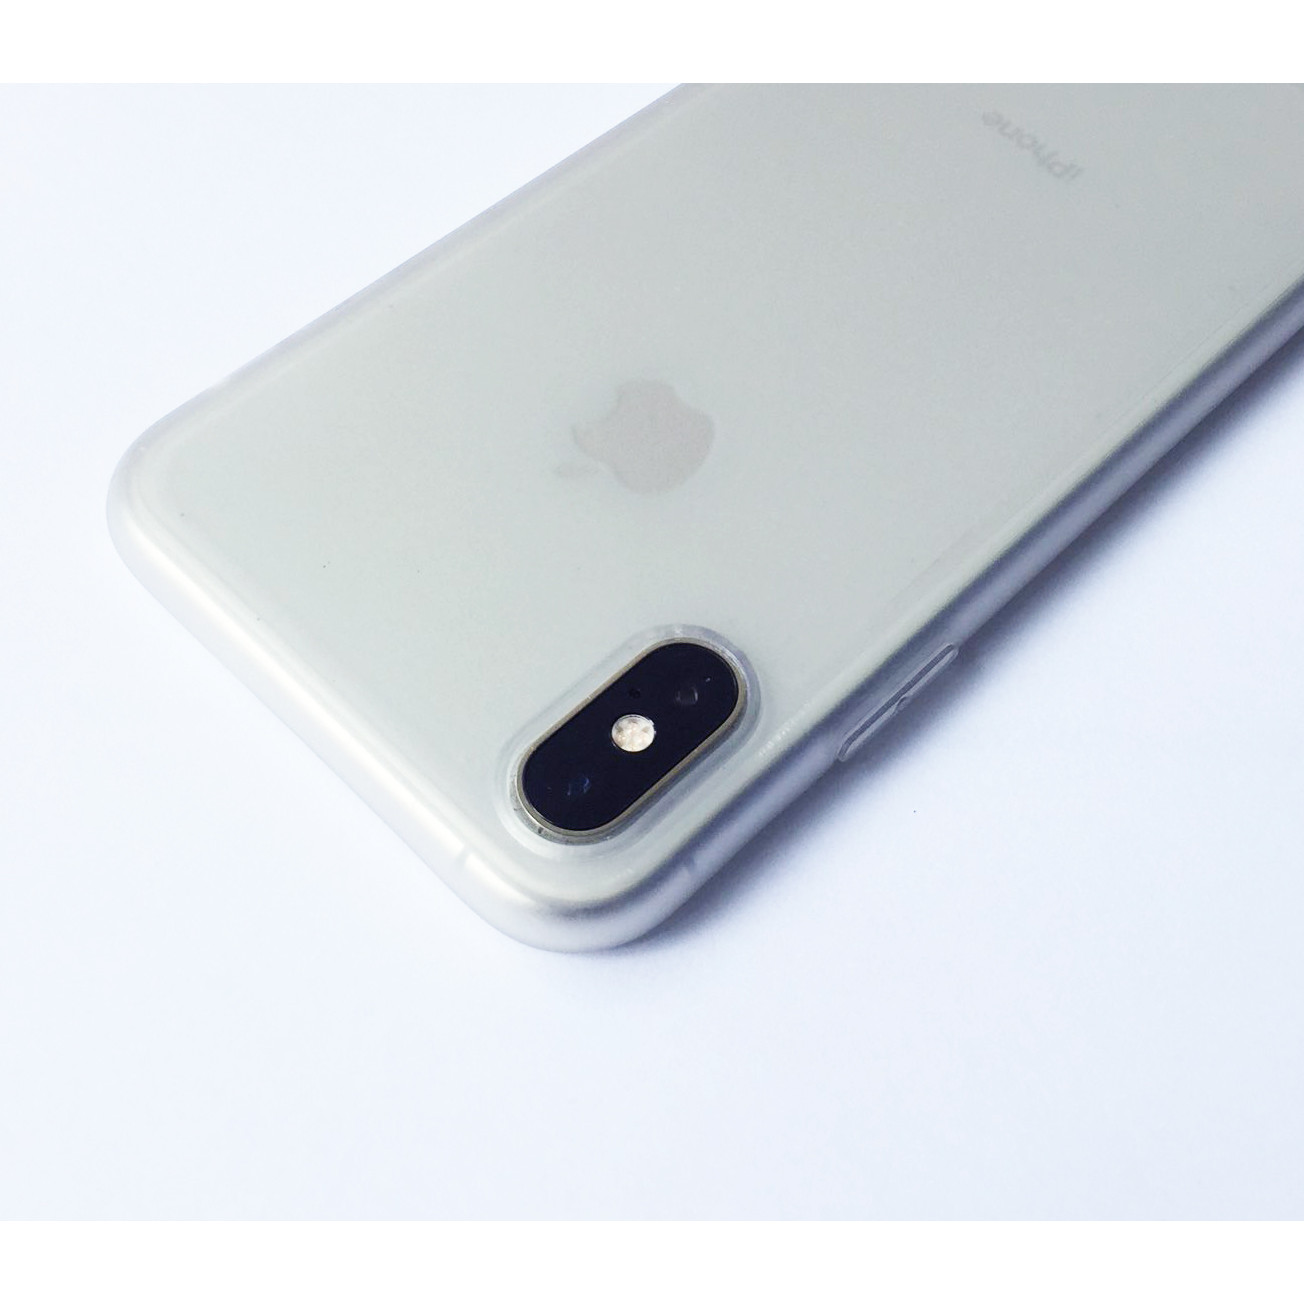 Hình ảnh Ốp lưng viền dẻo trong sần nhám trắng dành cho iPhone X vs iPhone XS